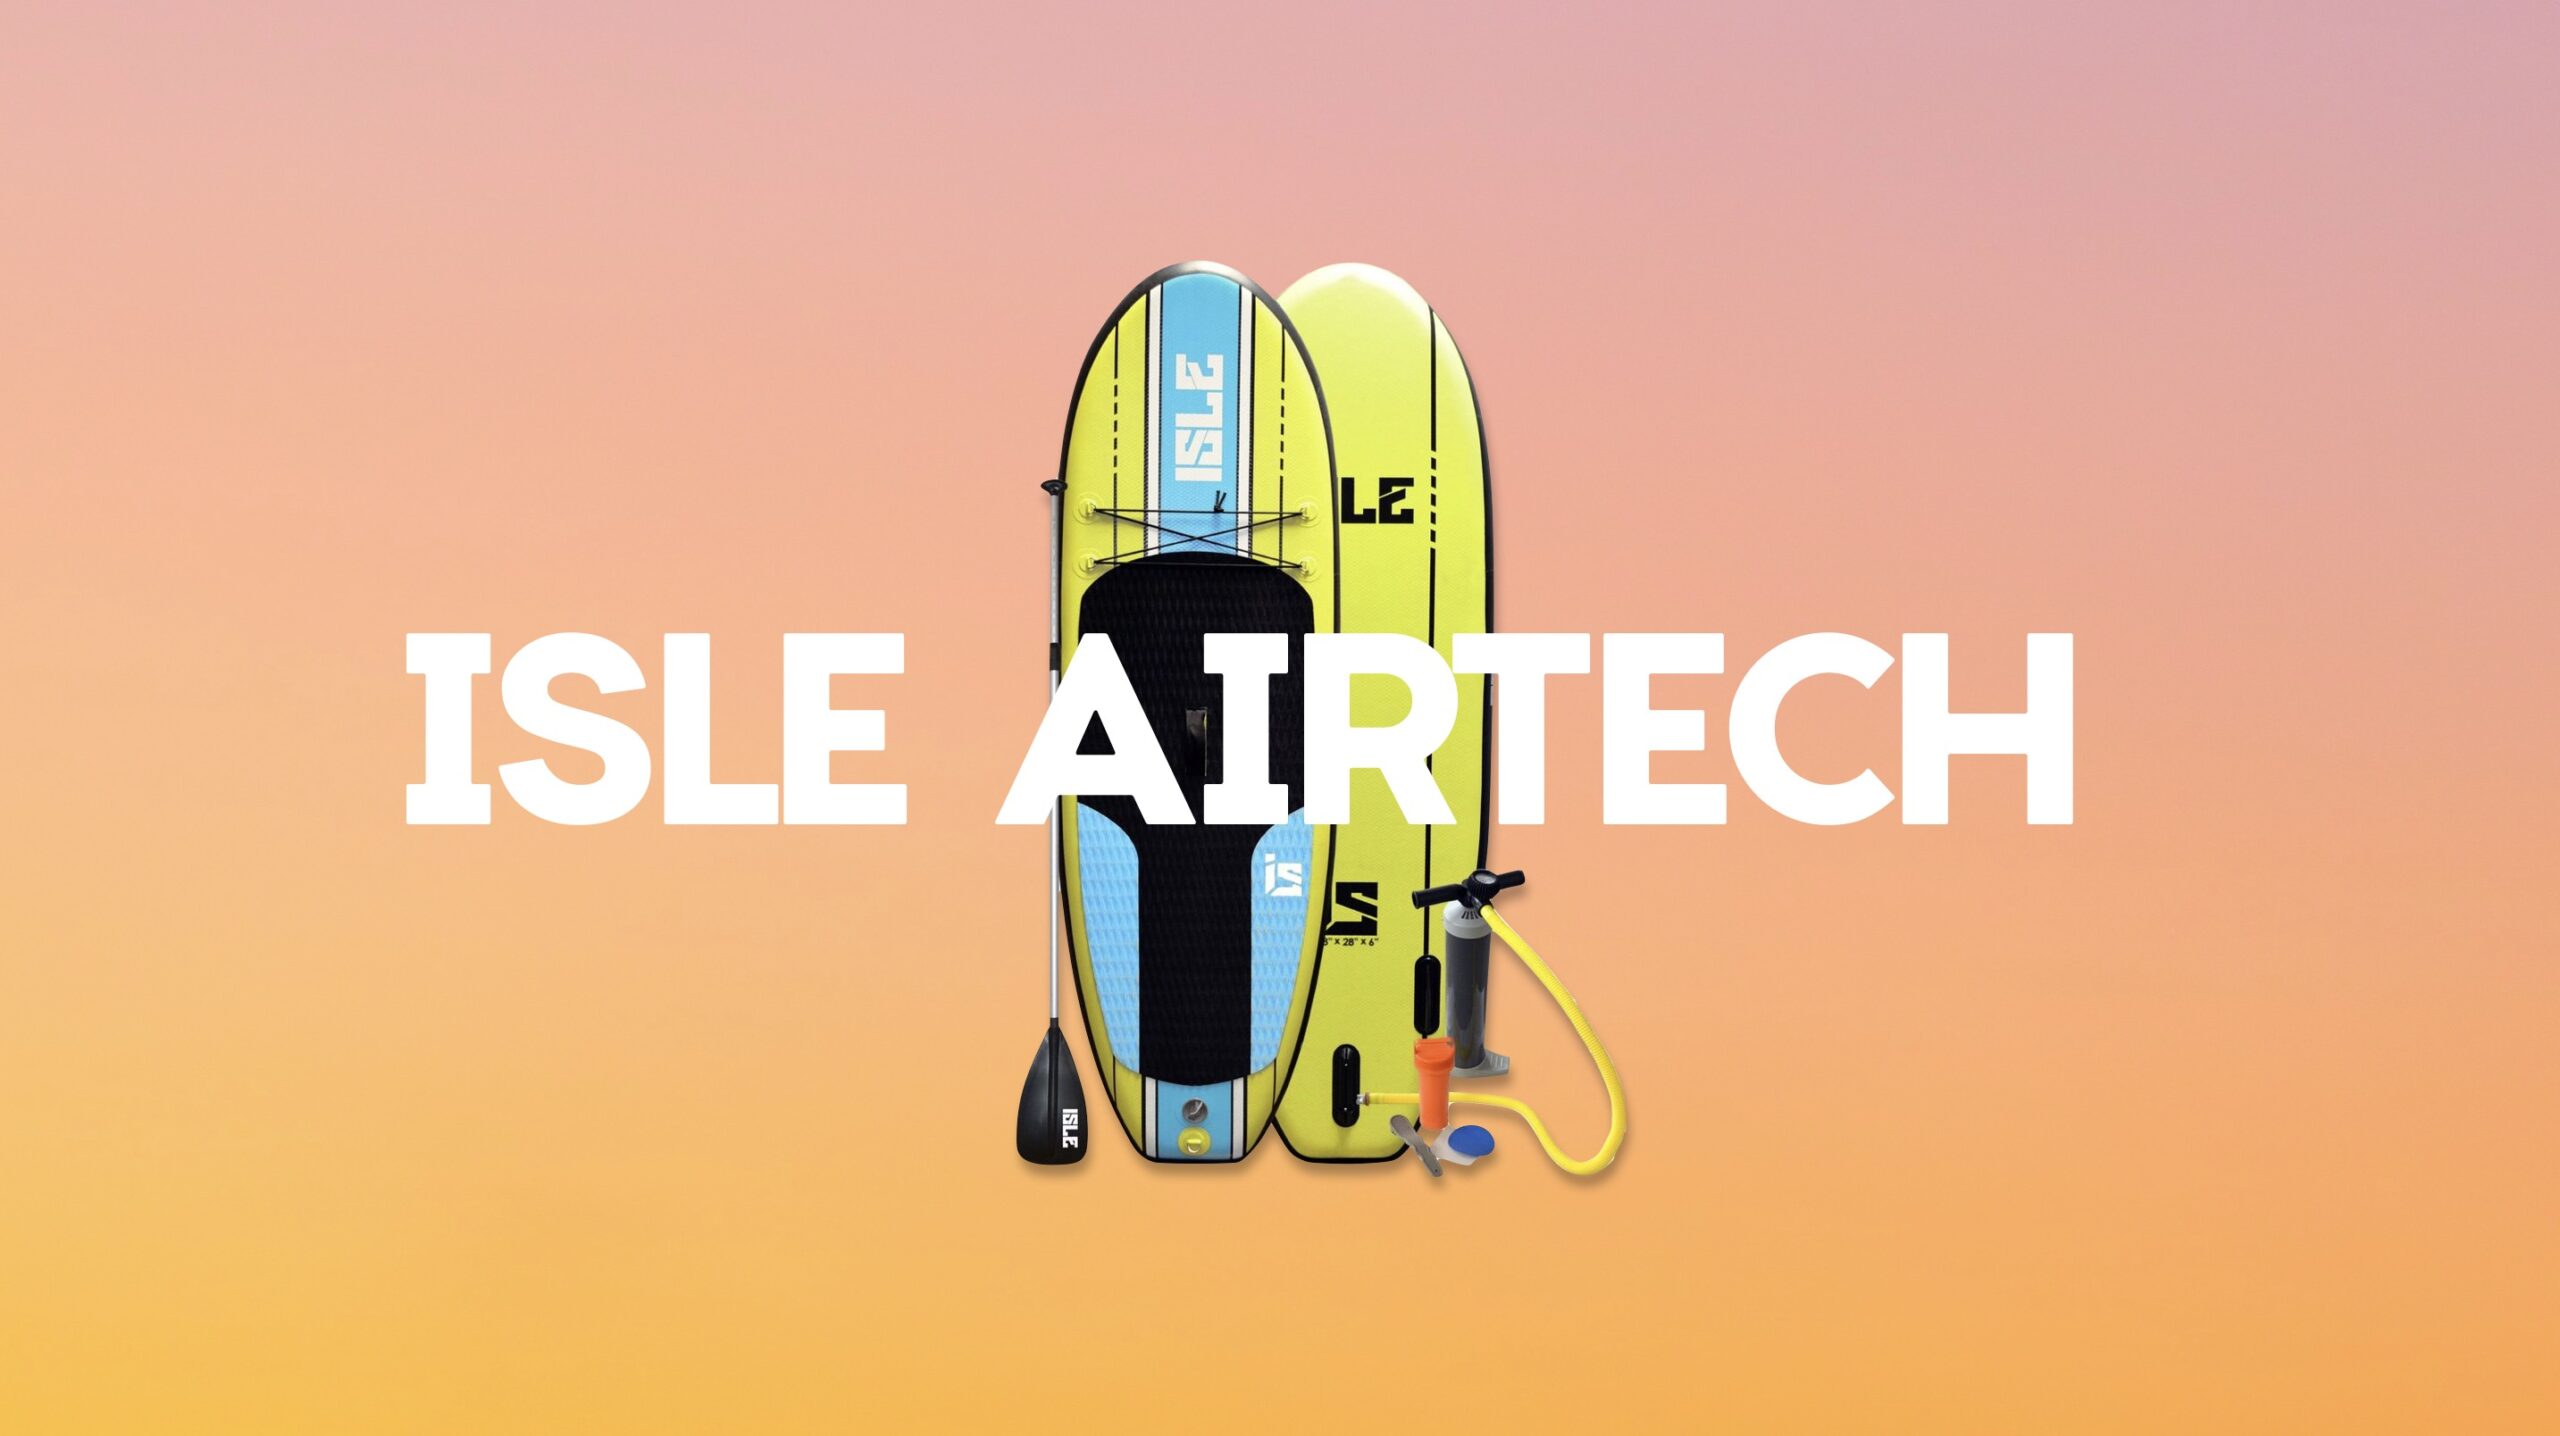 Isle Airtech